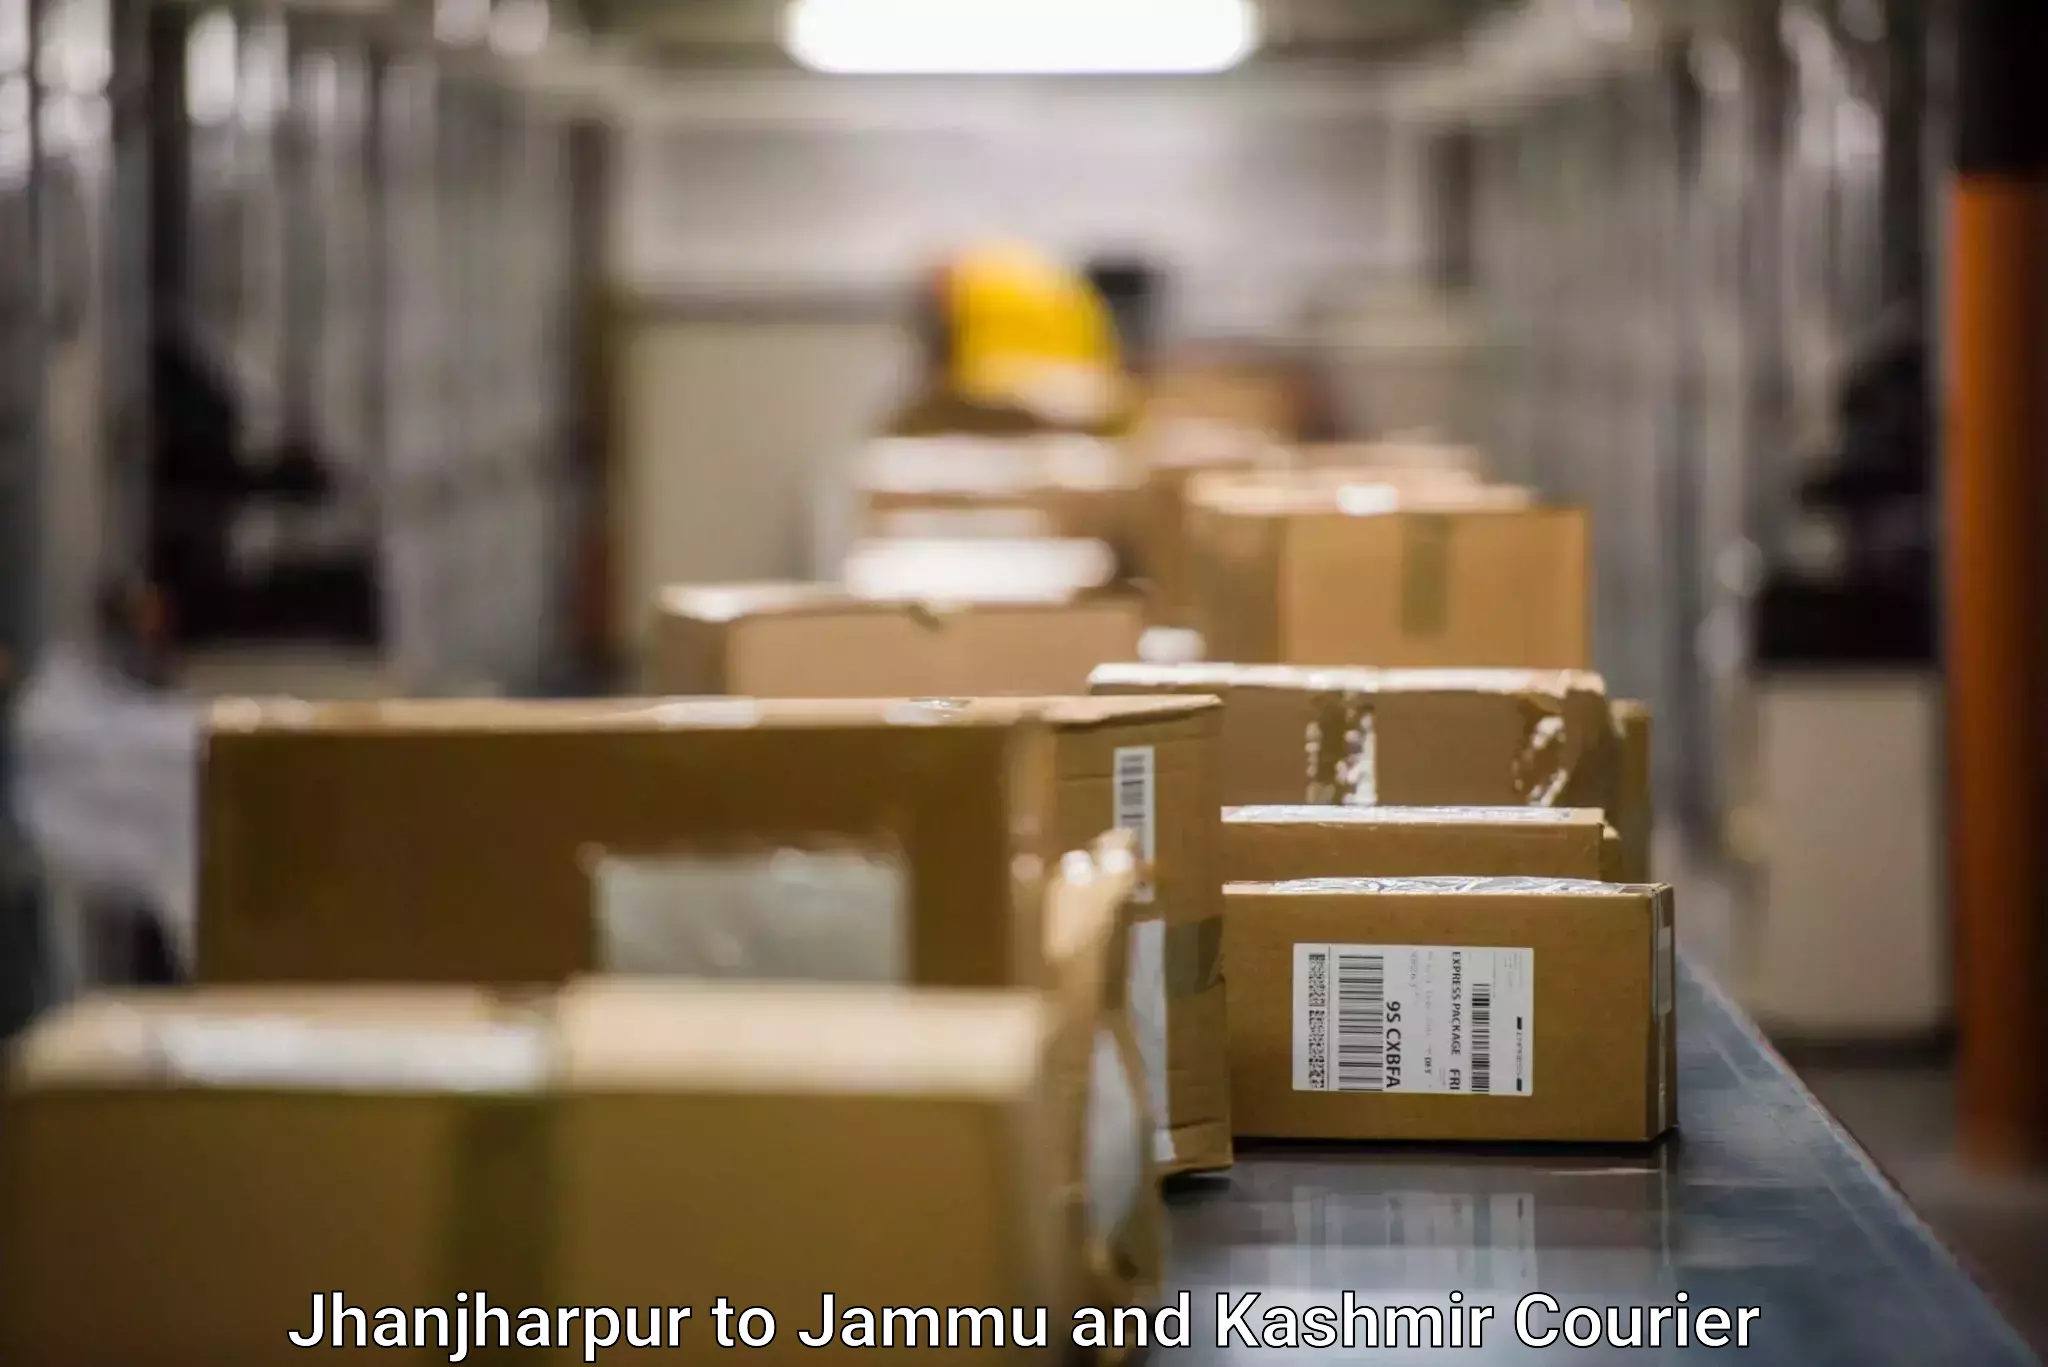 Rapid shipping services in Jhanjharpur to Billawar